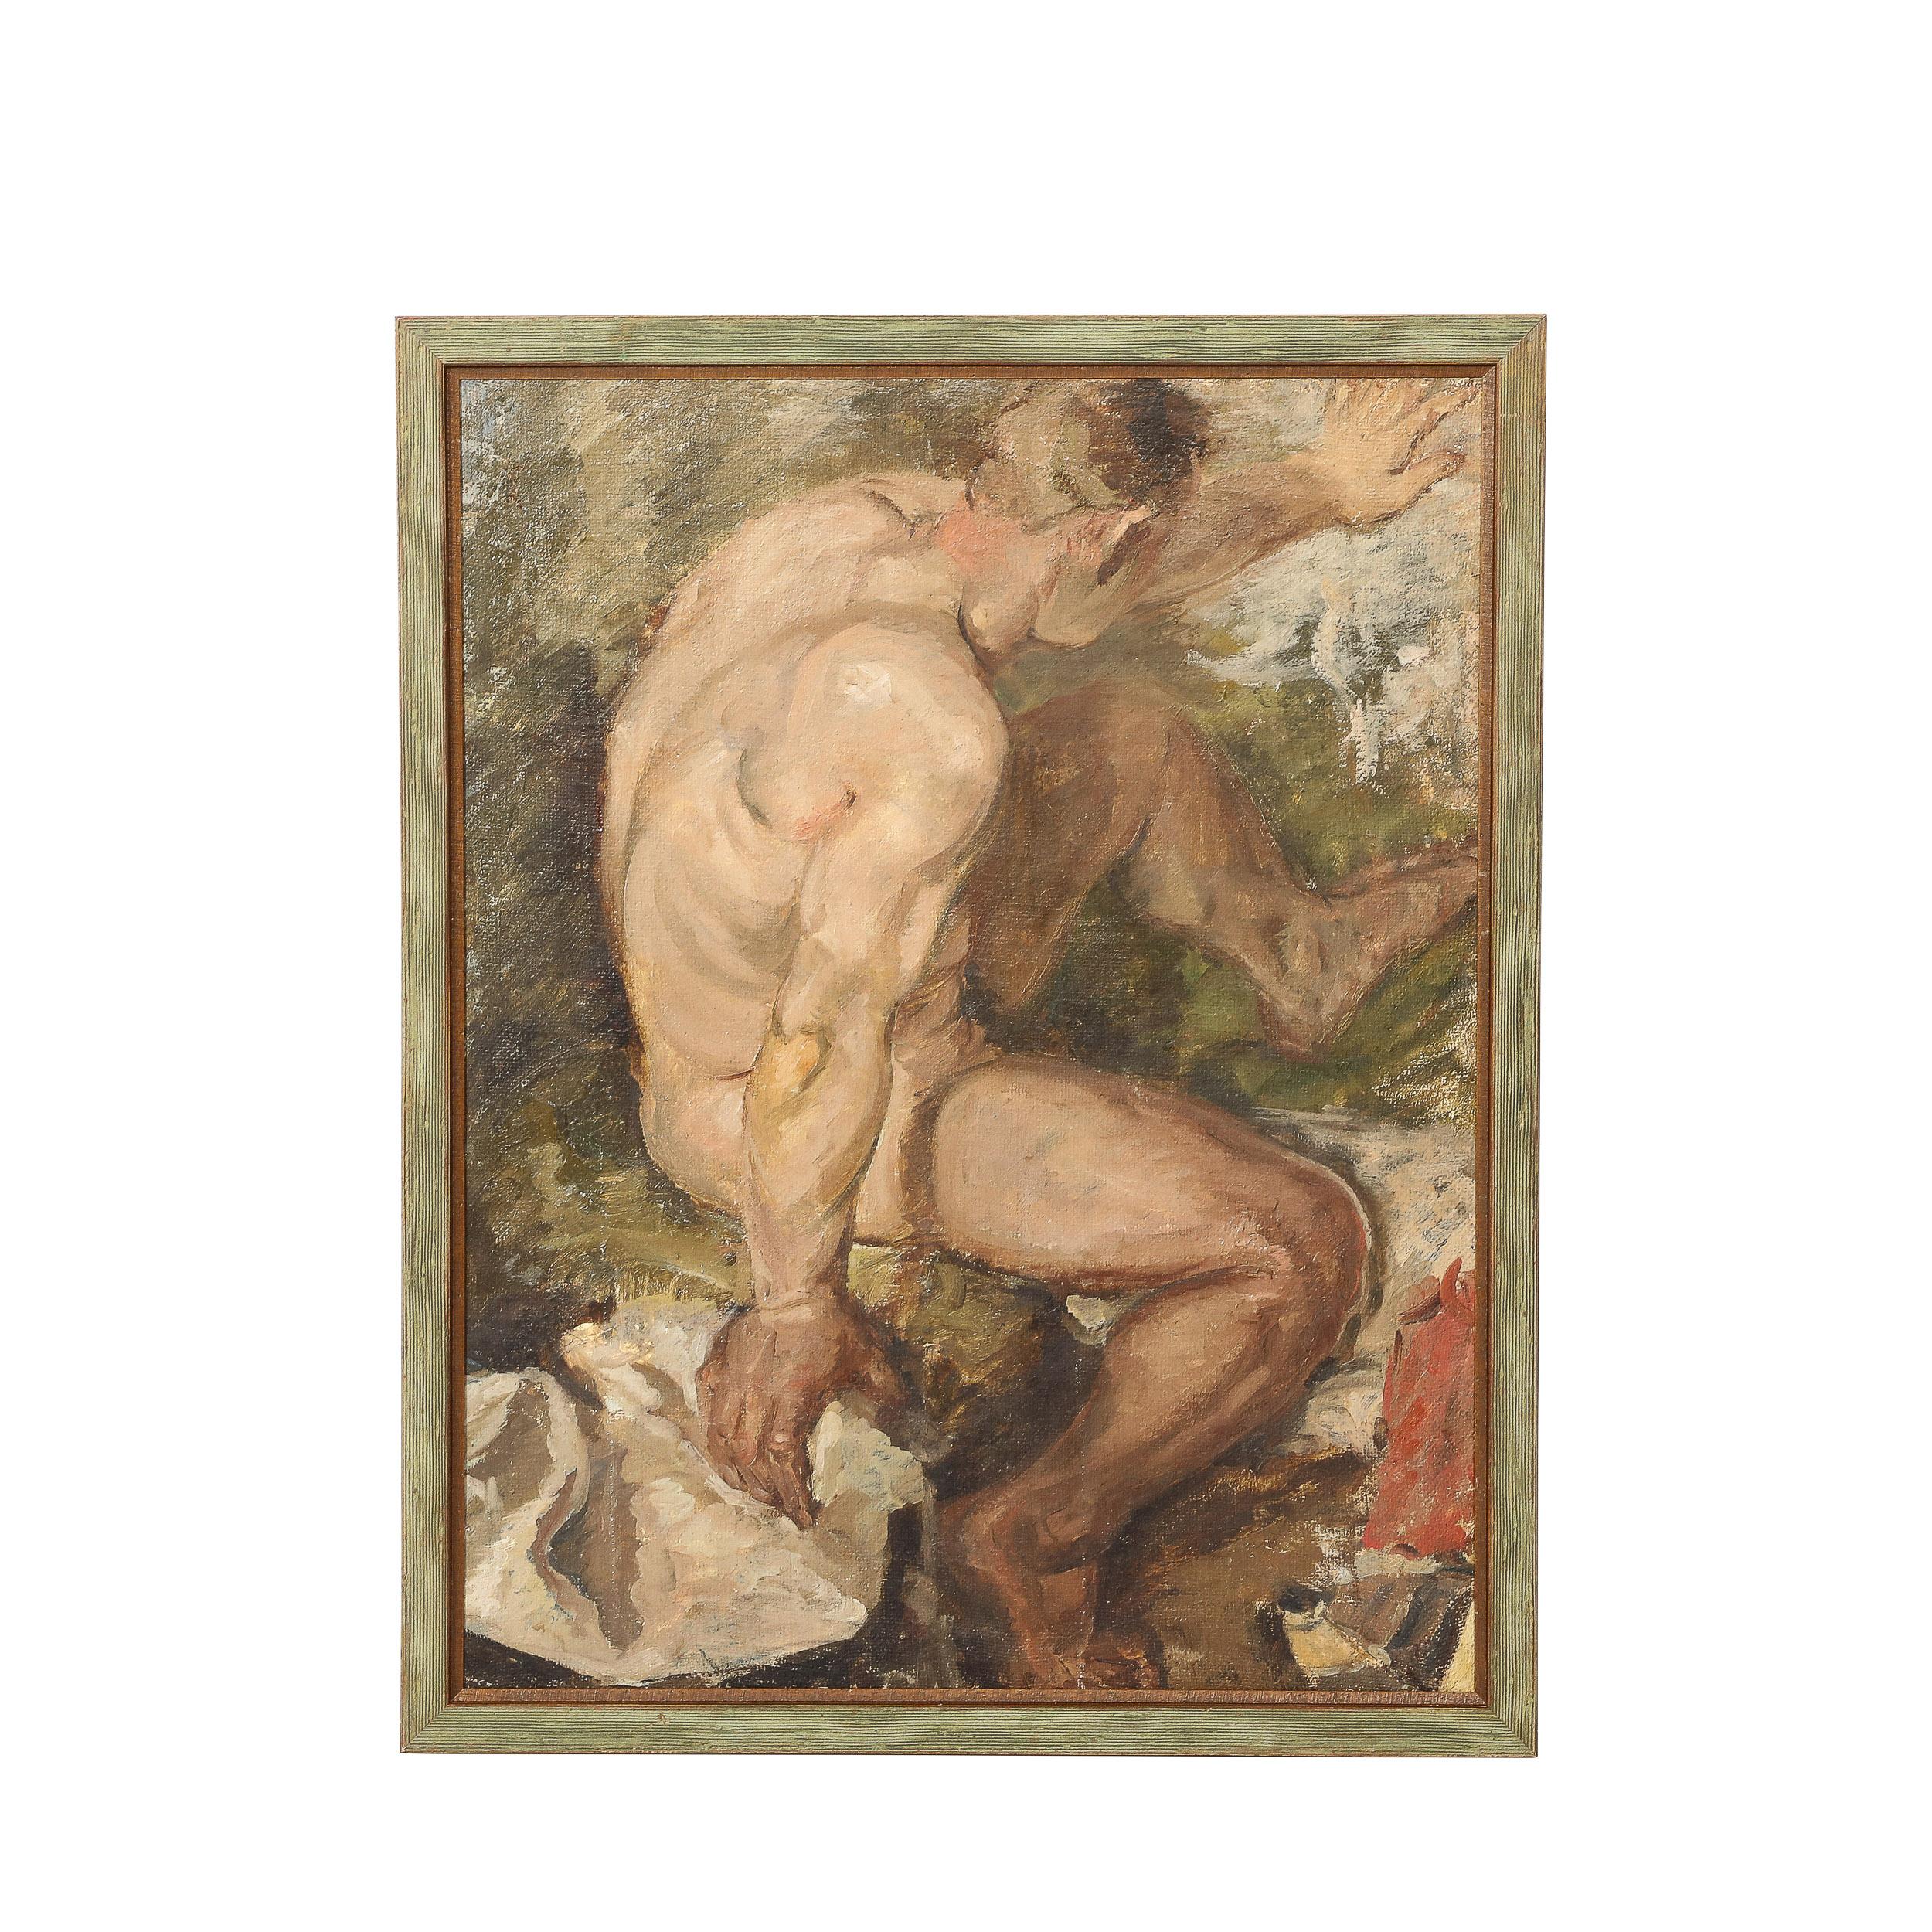 Unknown Figurative Painting – Romantisches Ölgemälde auf Sackleinen mit einer nackten männlichen Figur, die in einem Fluss badet 